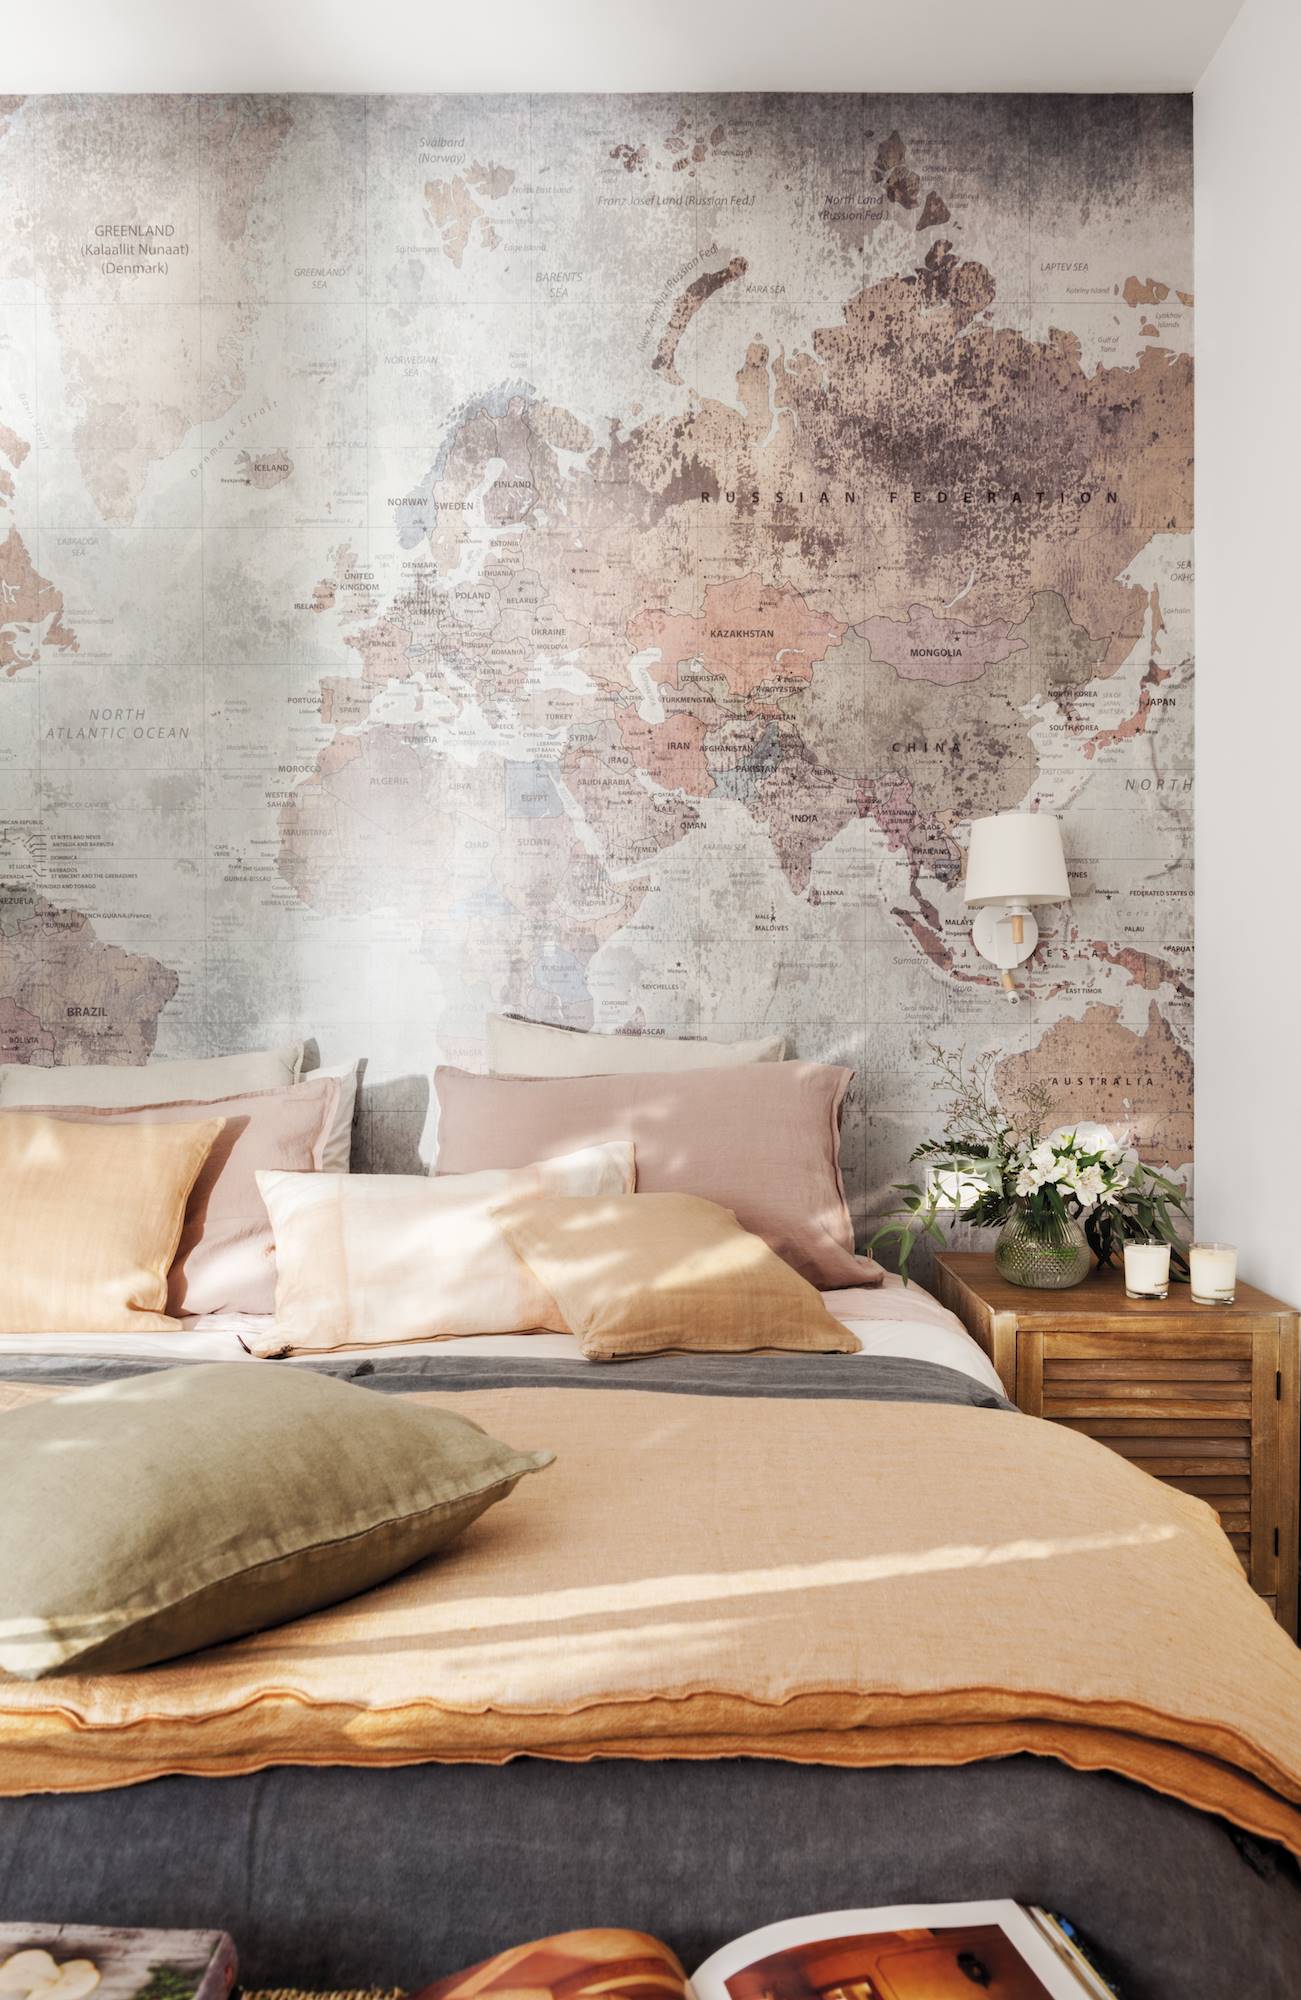 Dormitorio con mapa en pared cojines naranja y coral. 